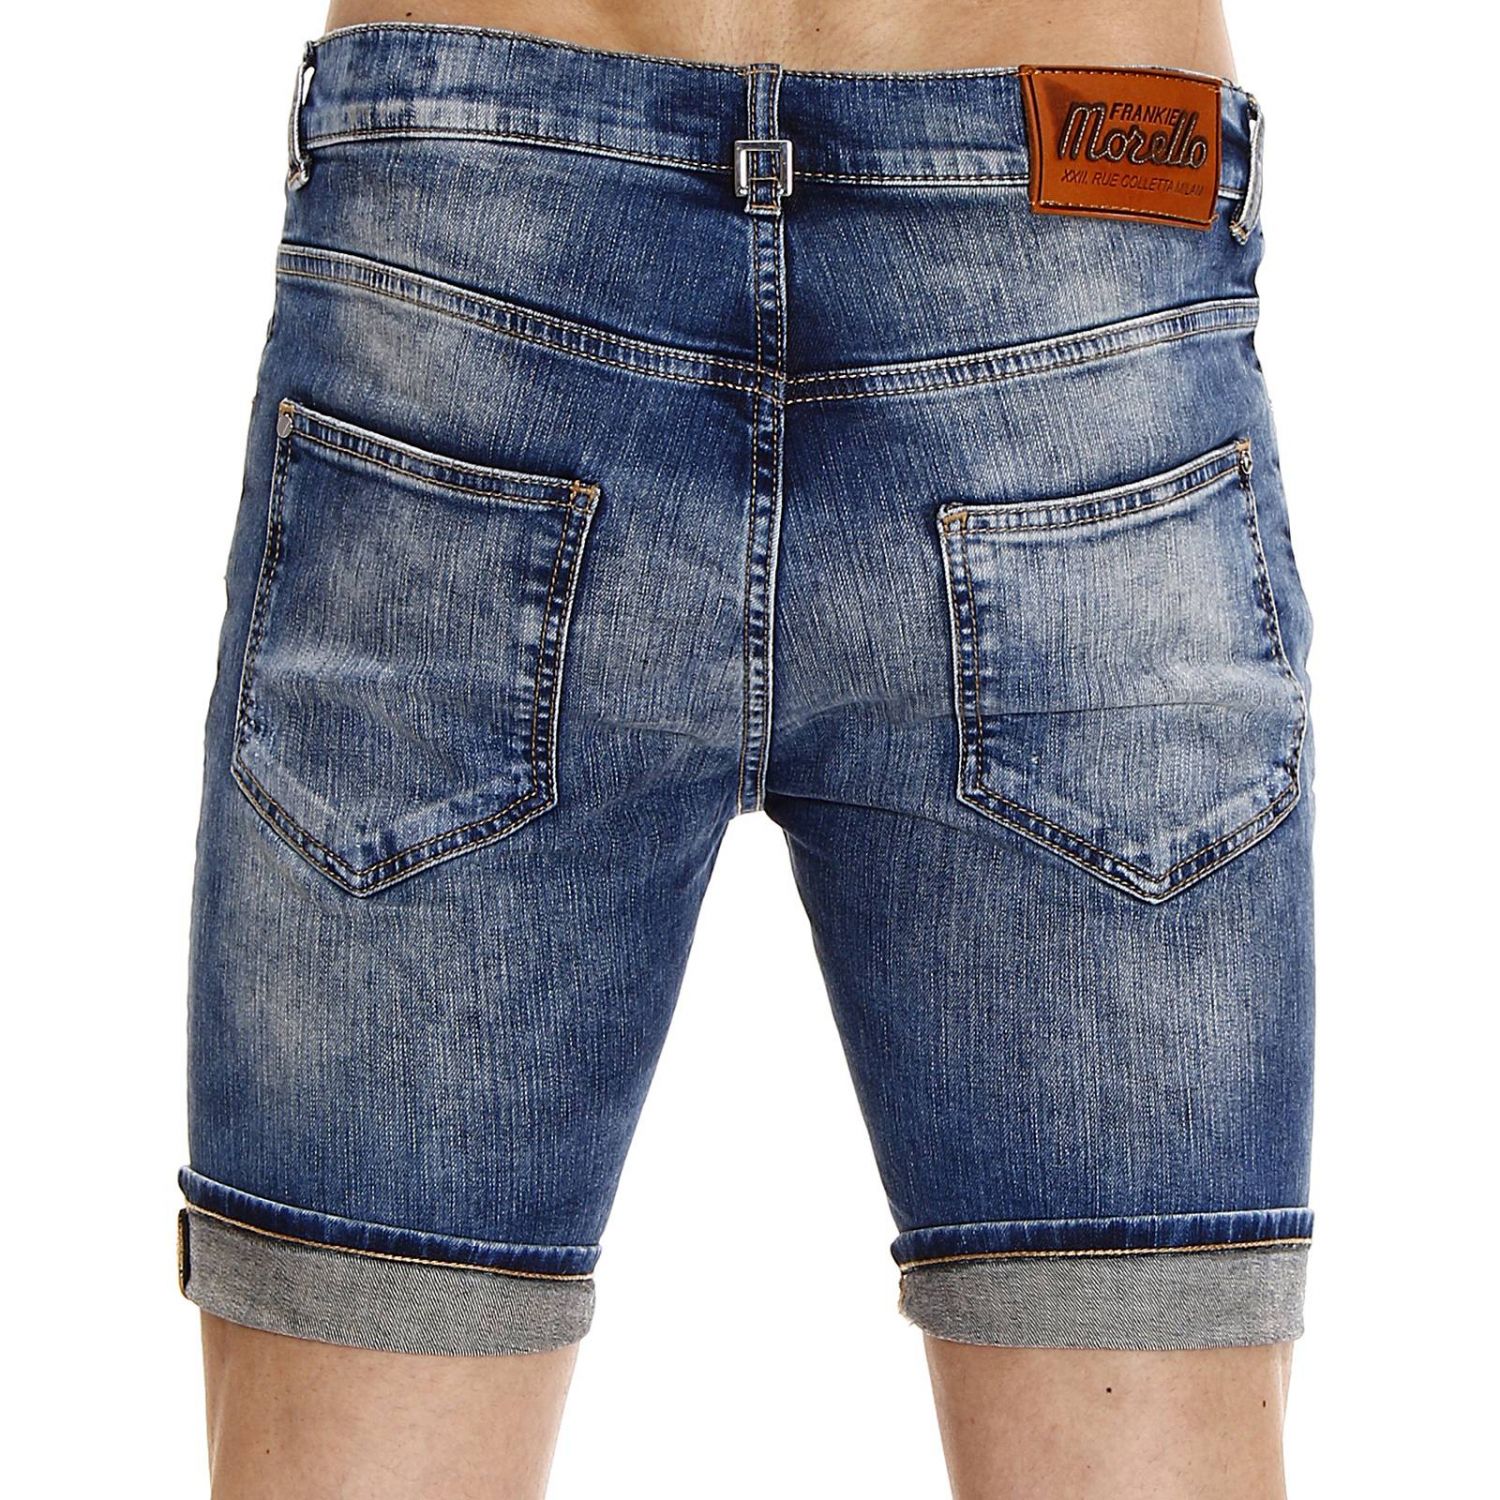 Frankie Morello Outlet: pants denim short 5 pockets | Pants Frankie ...